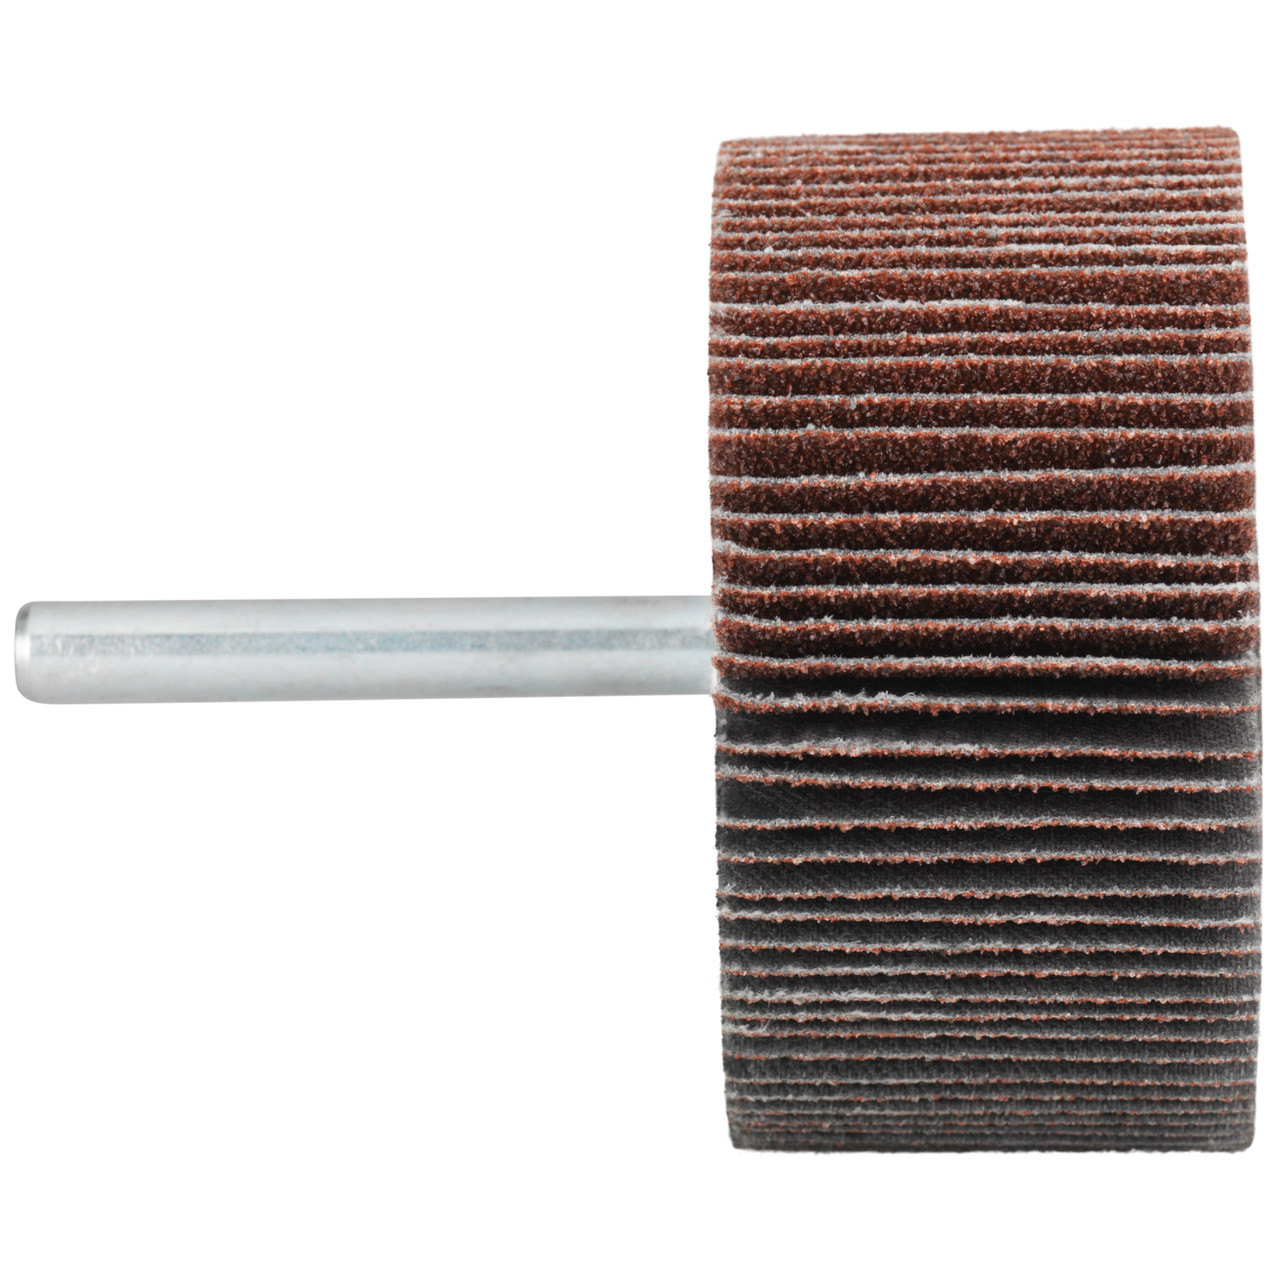 Tyrolit A-P01 C X Pennen DxD 10x10 Voor staal, roestvast staal en non-ferrometalen, P80, vorm: 52LA, Art. 909383